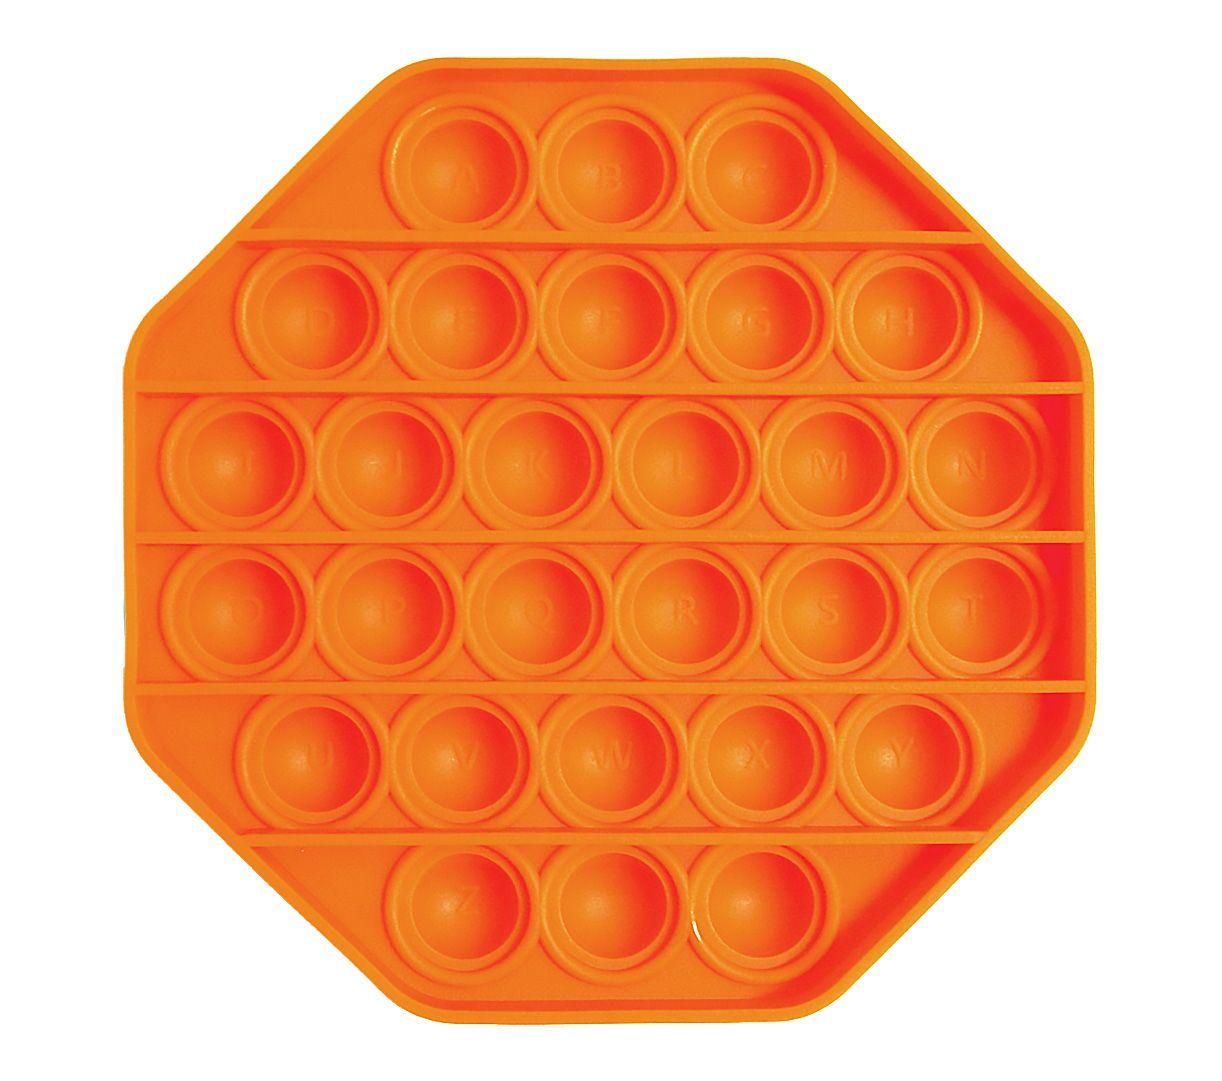 Zabawka sensoryczna PopIt antystresowa w kształcie oktagonu - pomarańczowa